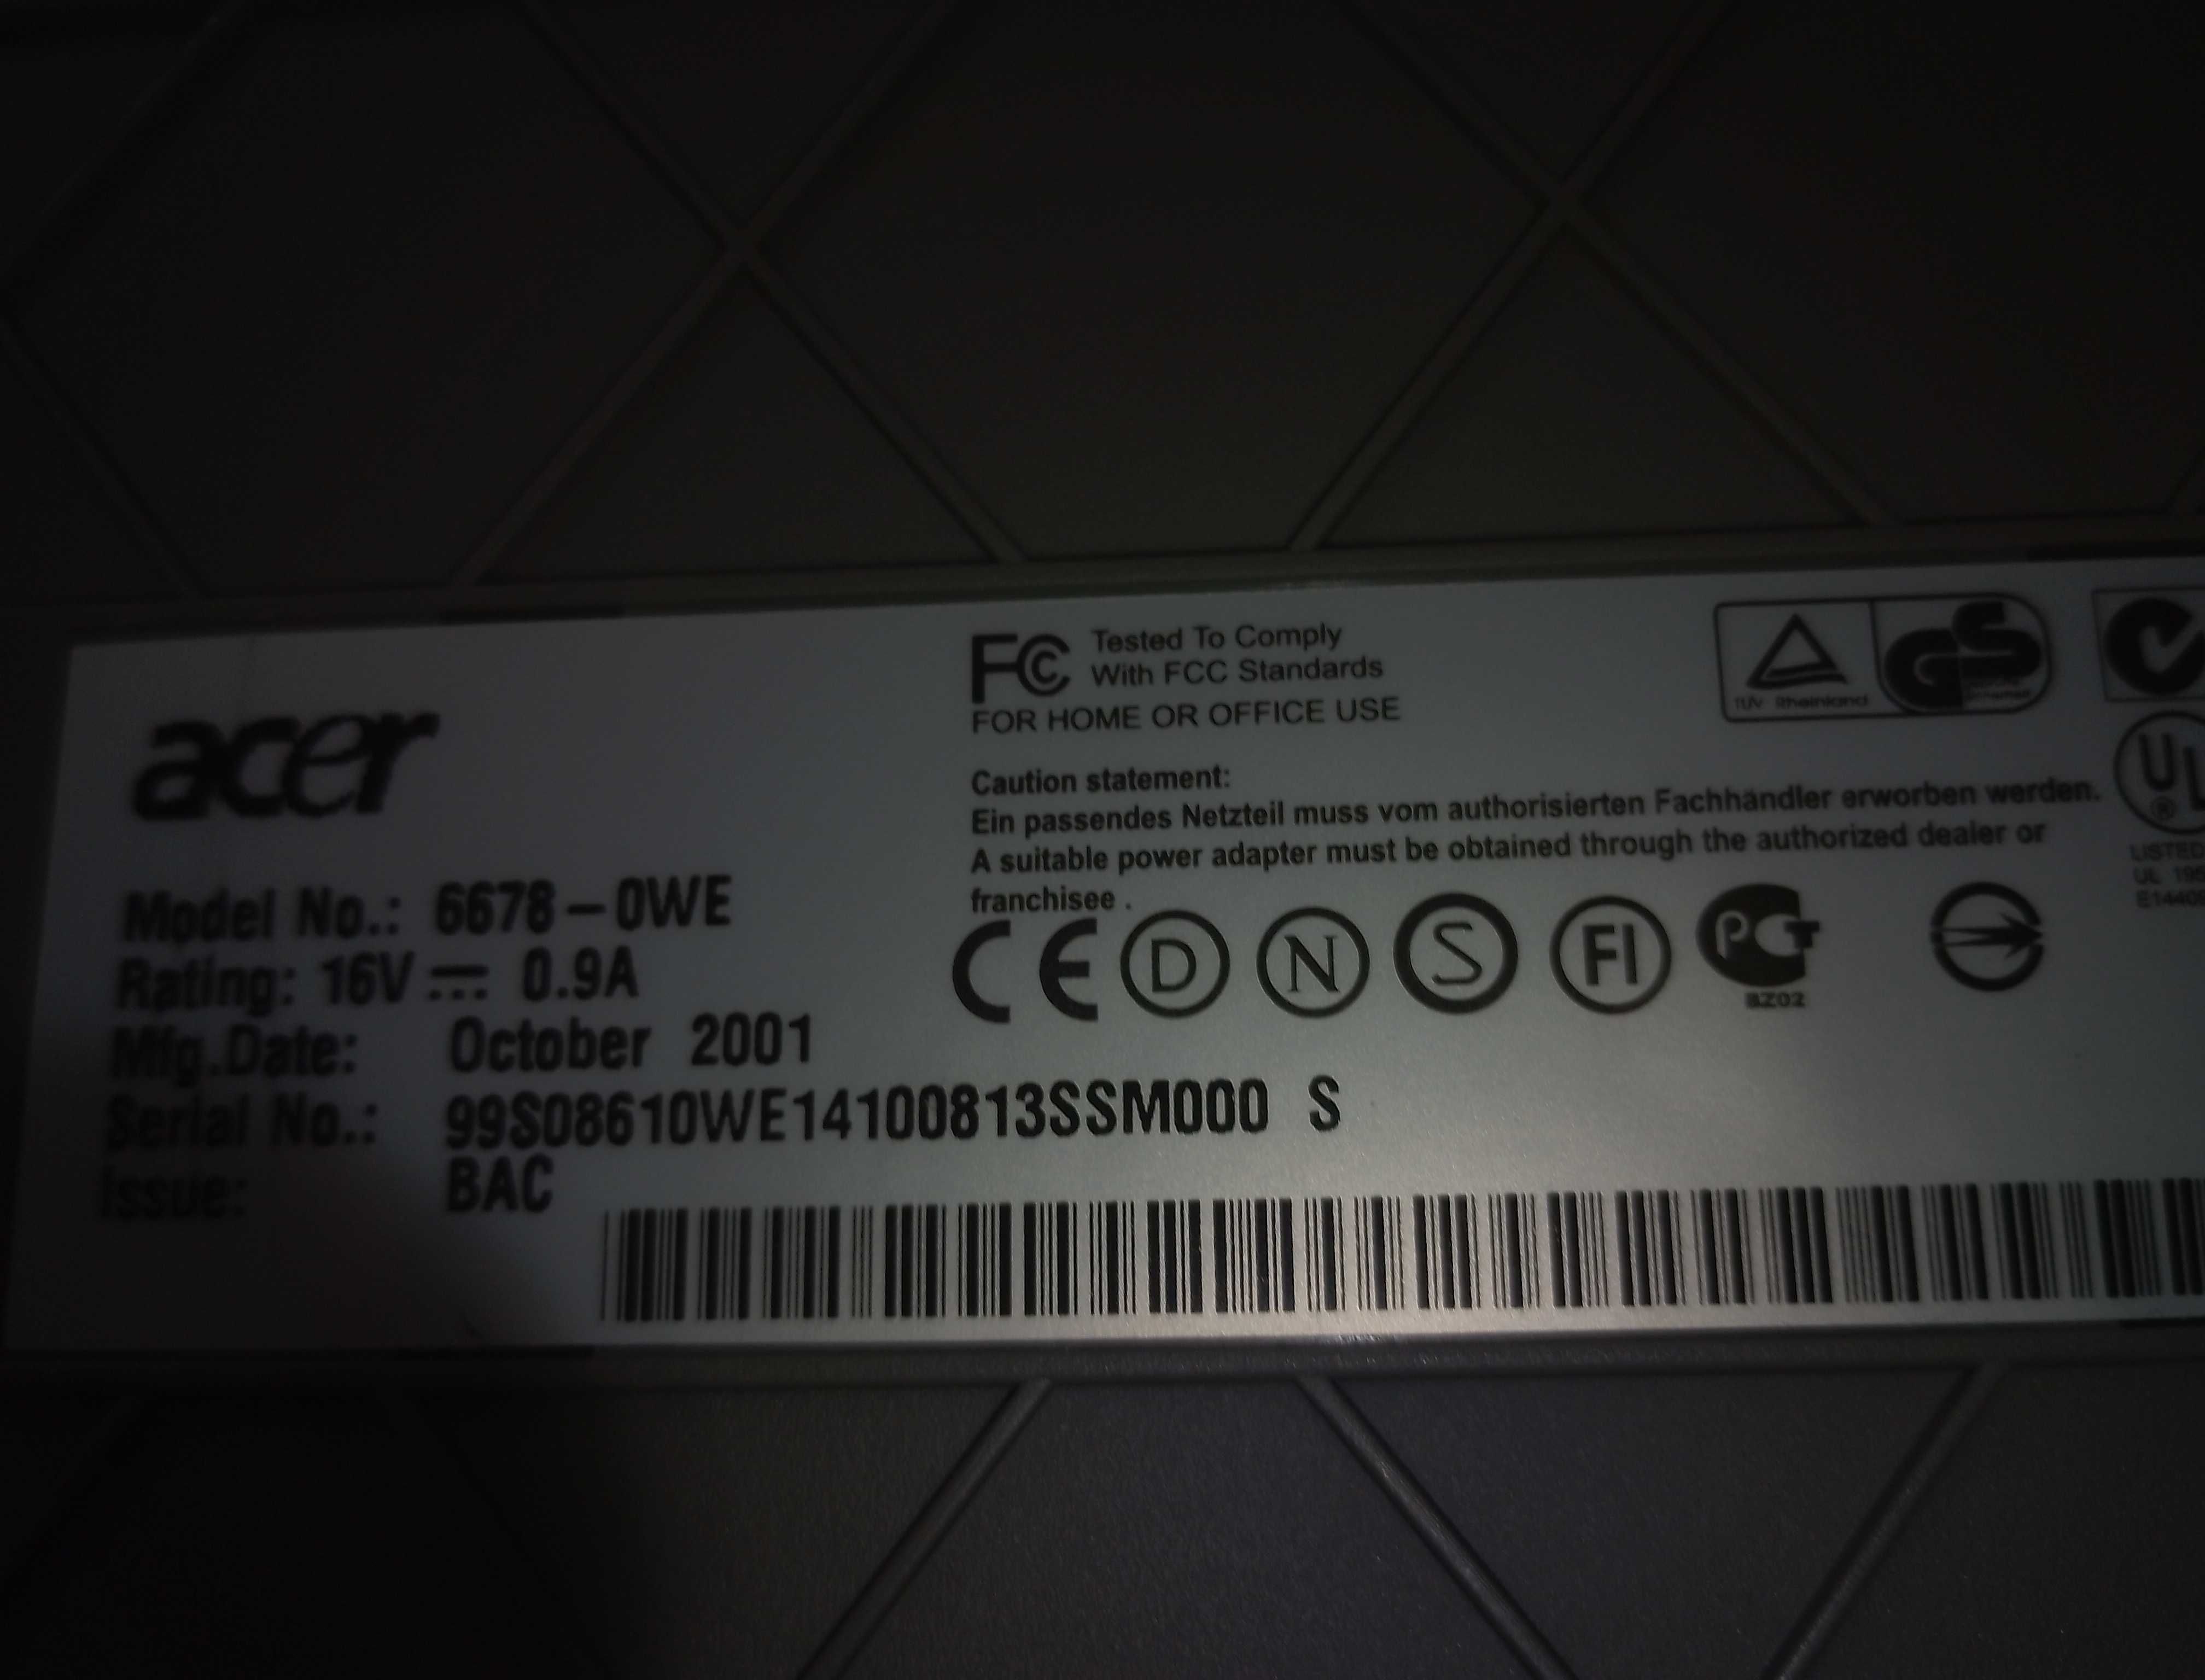 Сканер Acer 6678 Awa